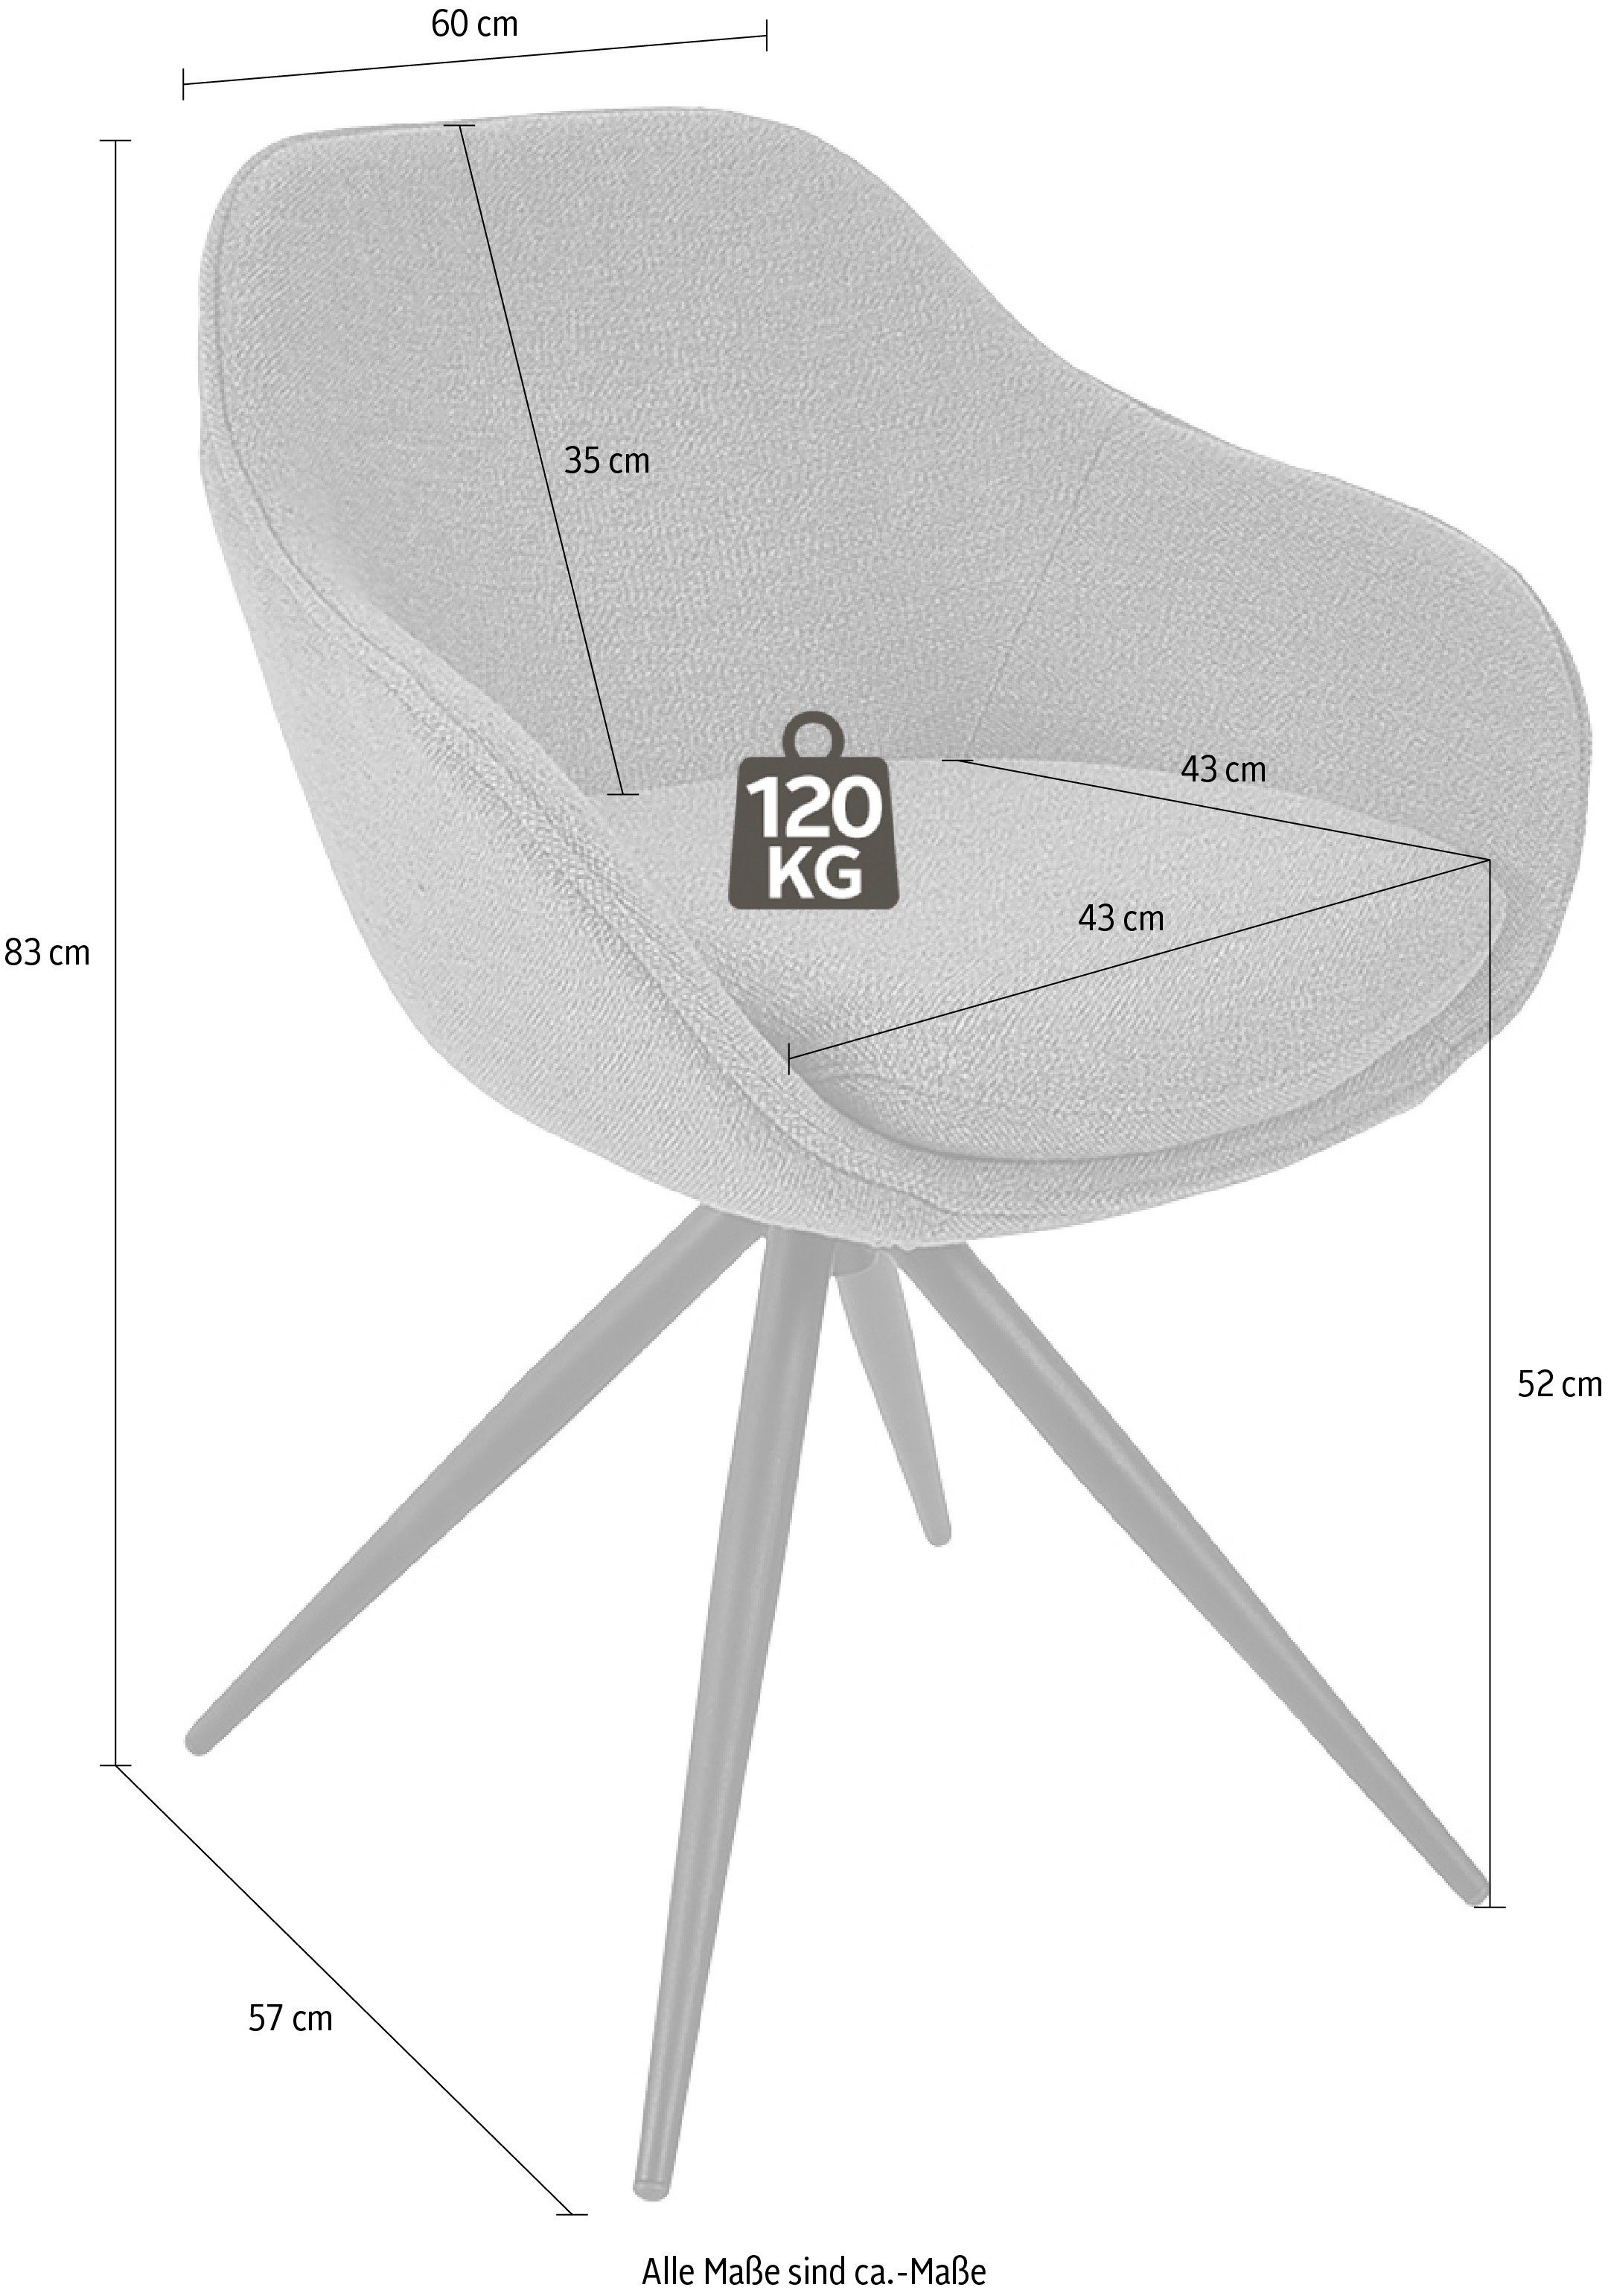 & Drehstuhl K+W 4-Fuß Metall Gestell Komfort Wohnen Struktur aus schwarz mit ZOOM, Drehstuhl